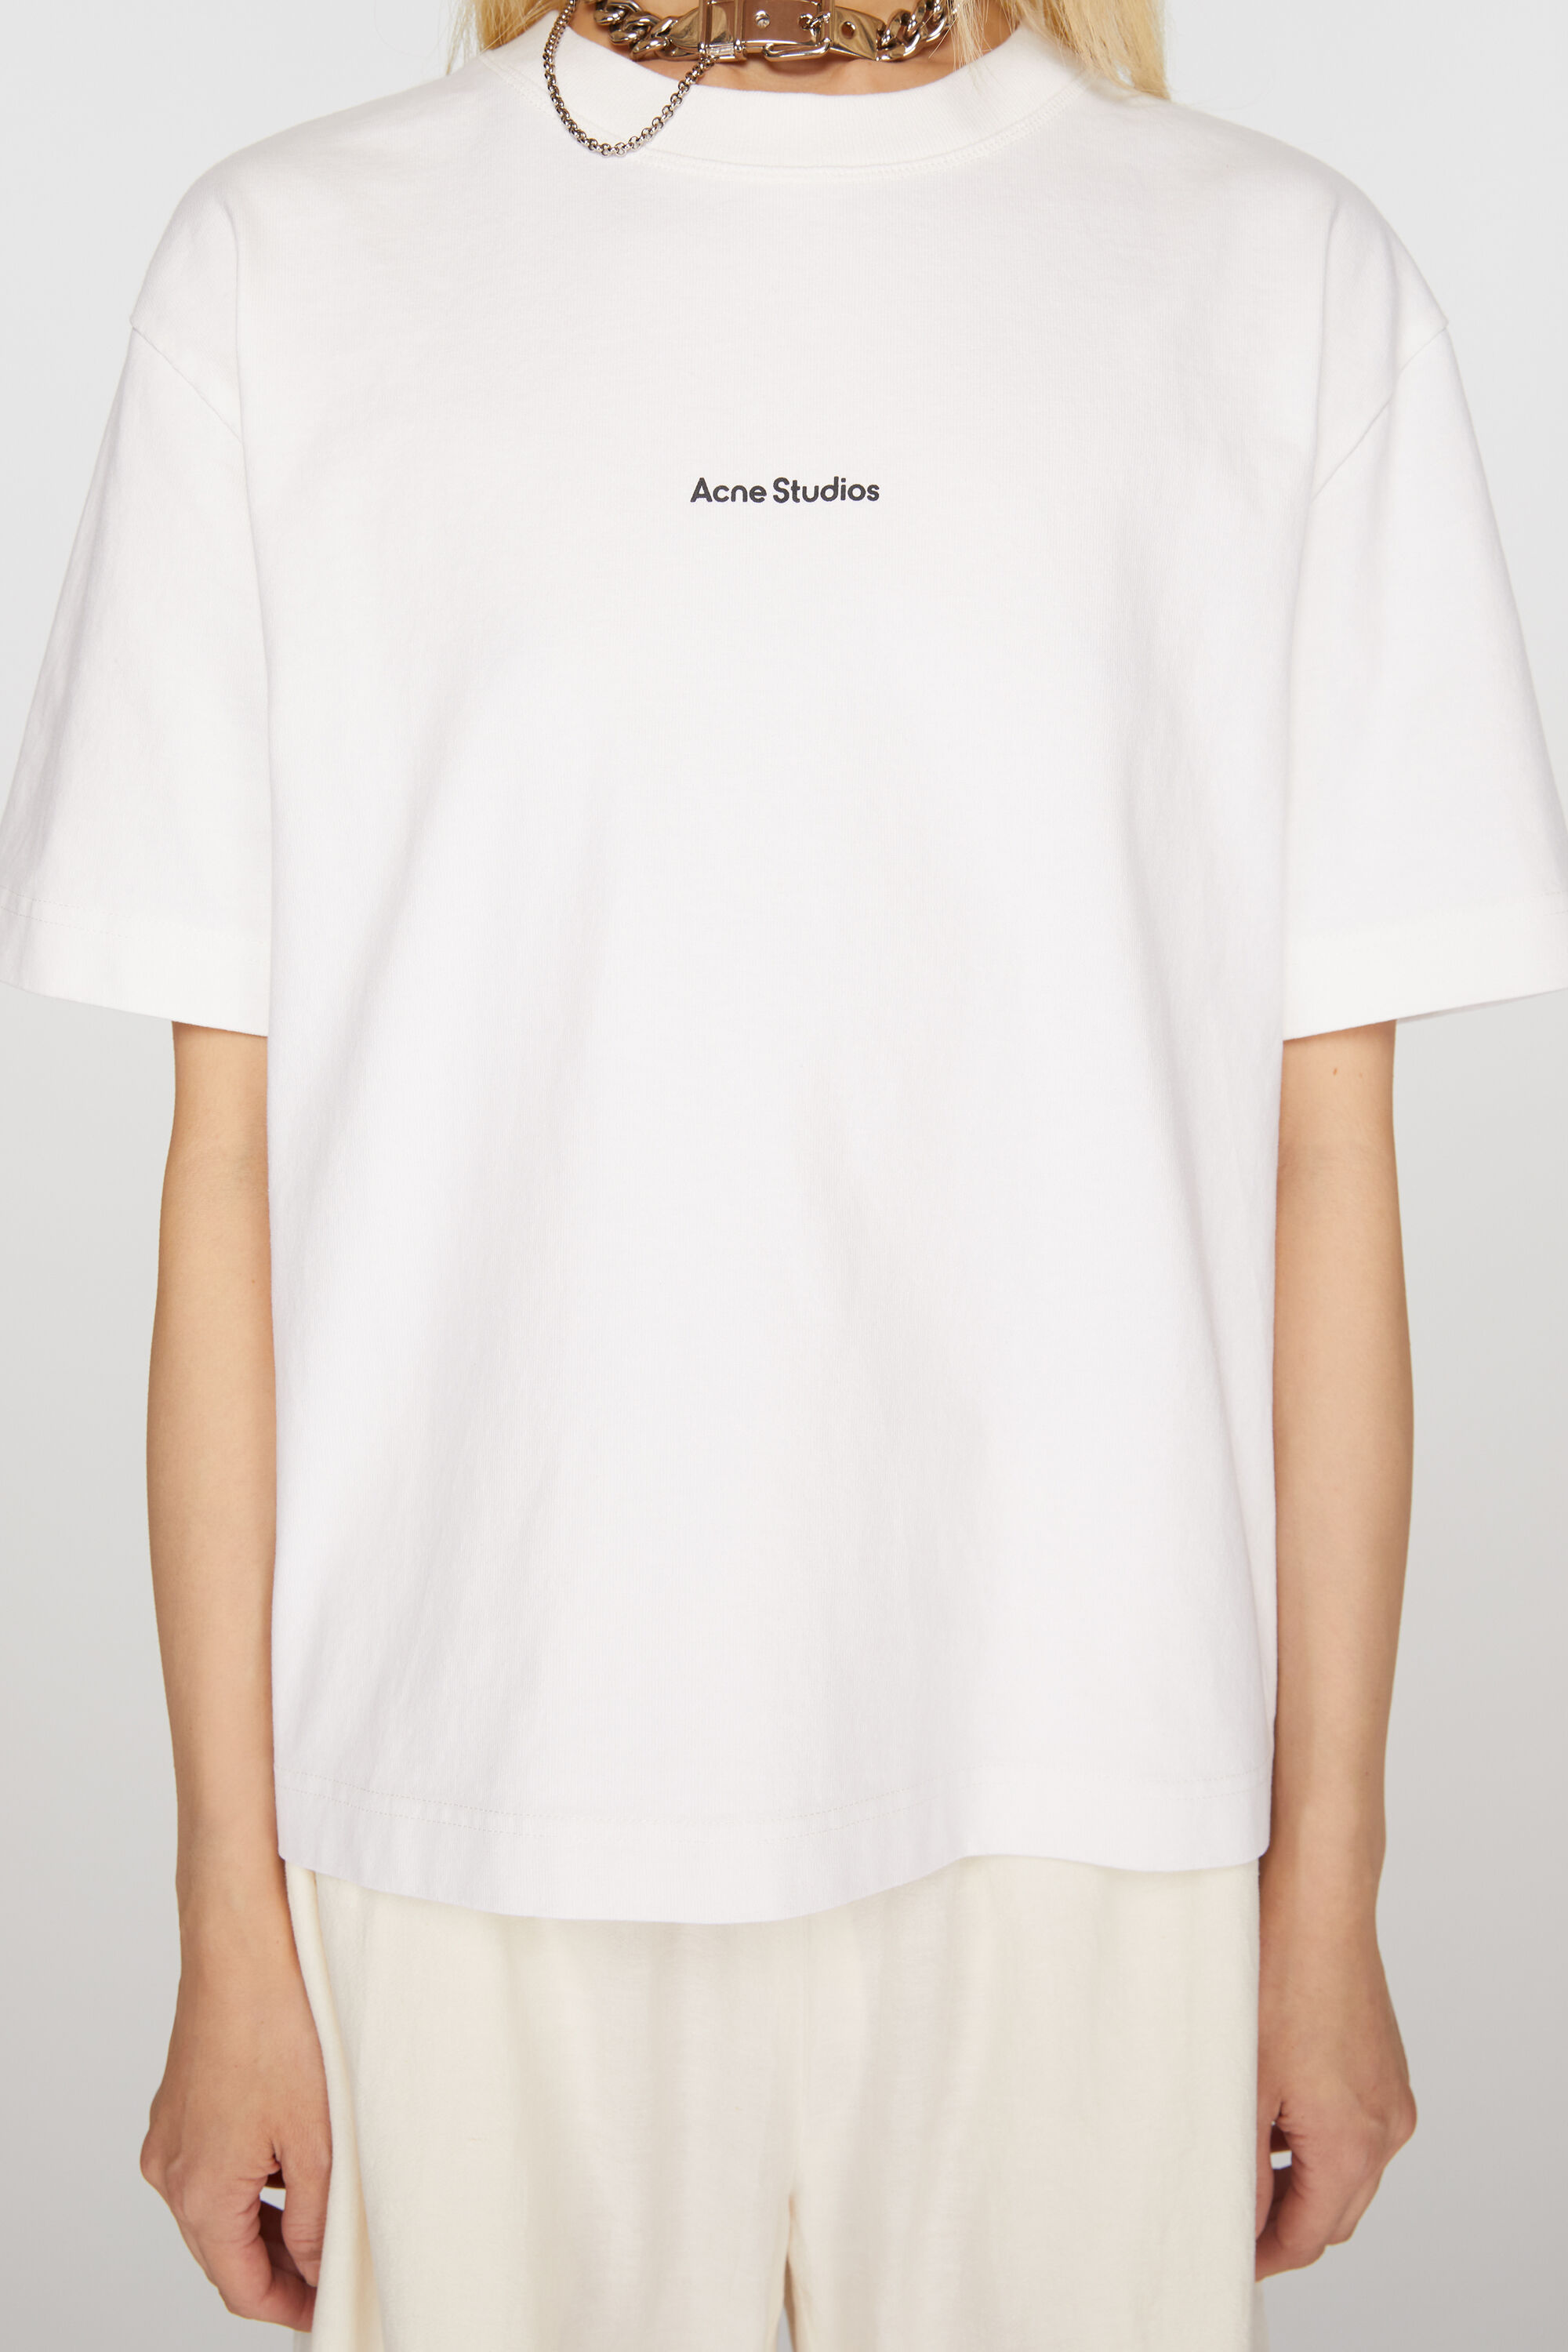 Tシャツ/カットソー(半袖/袖なし)タイムさん7/24までキープ中//Acne studios ロゴ 19SS